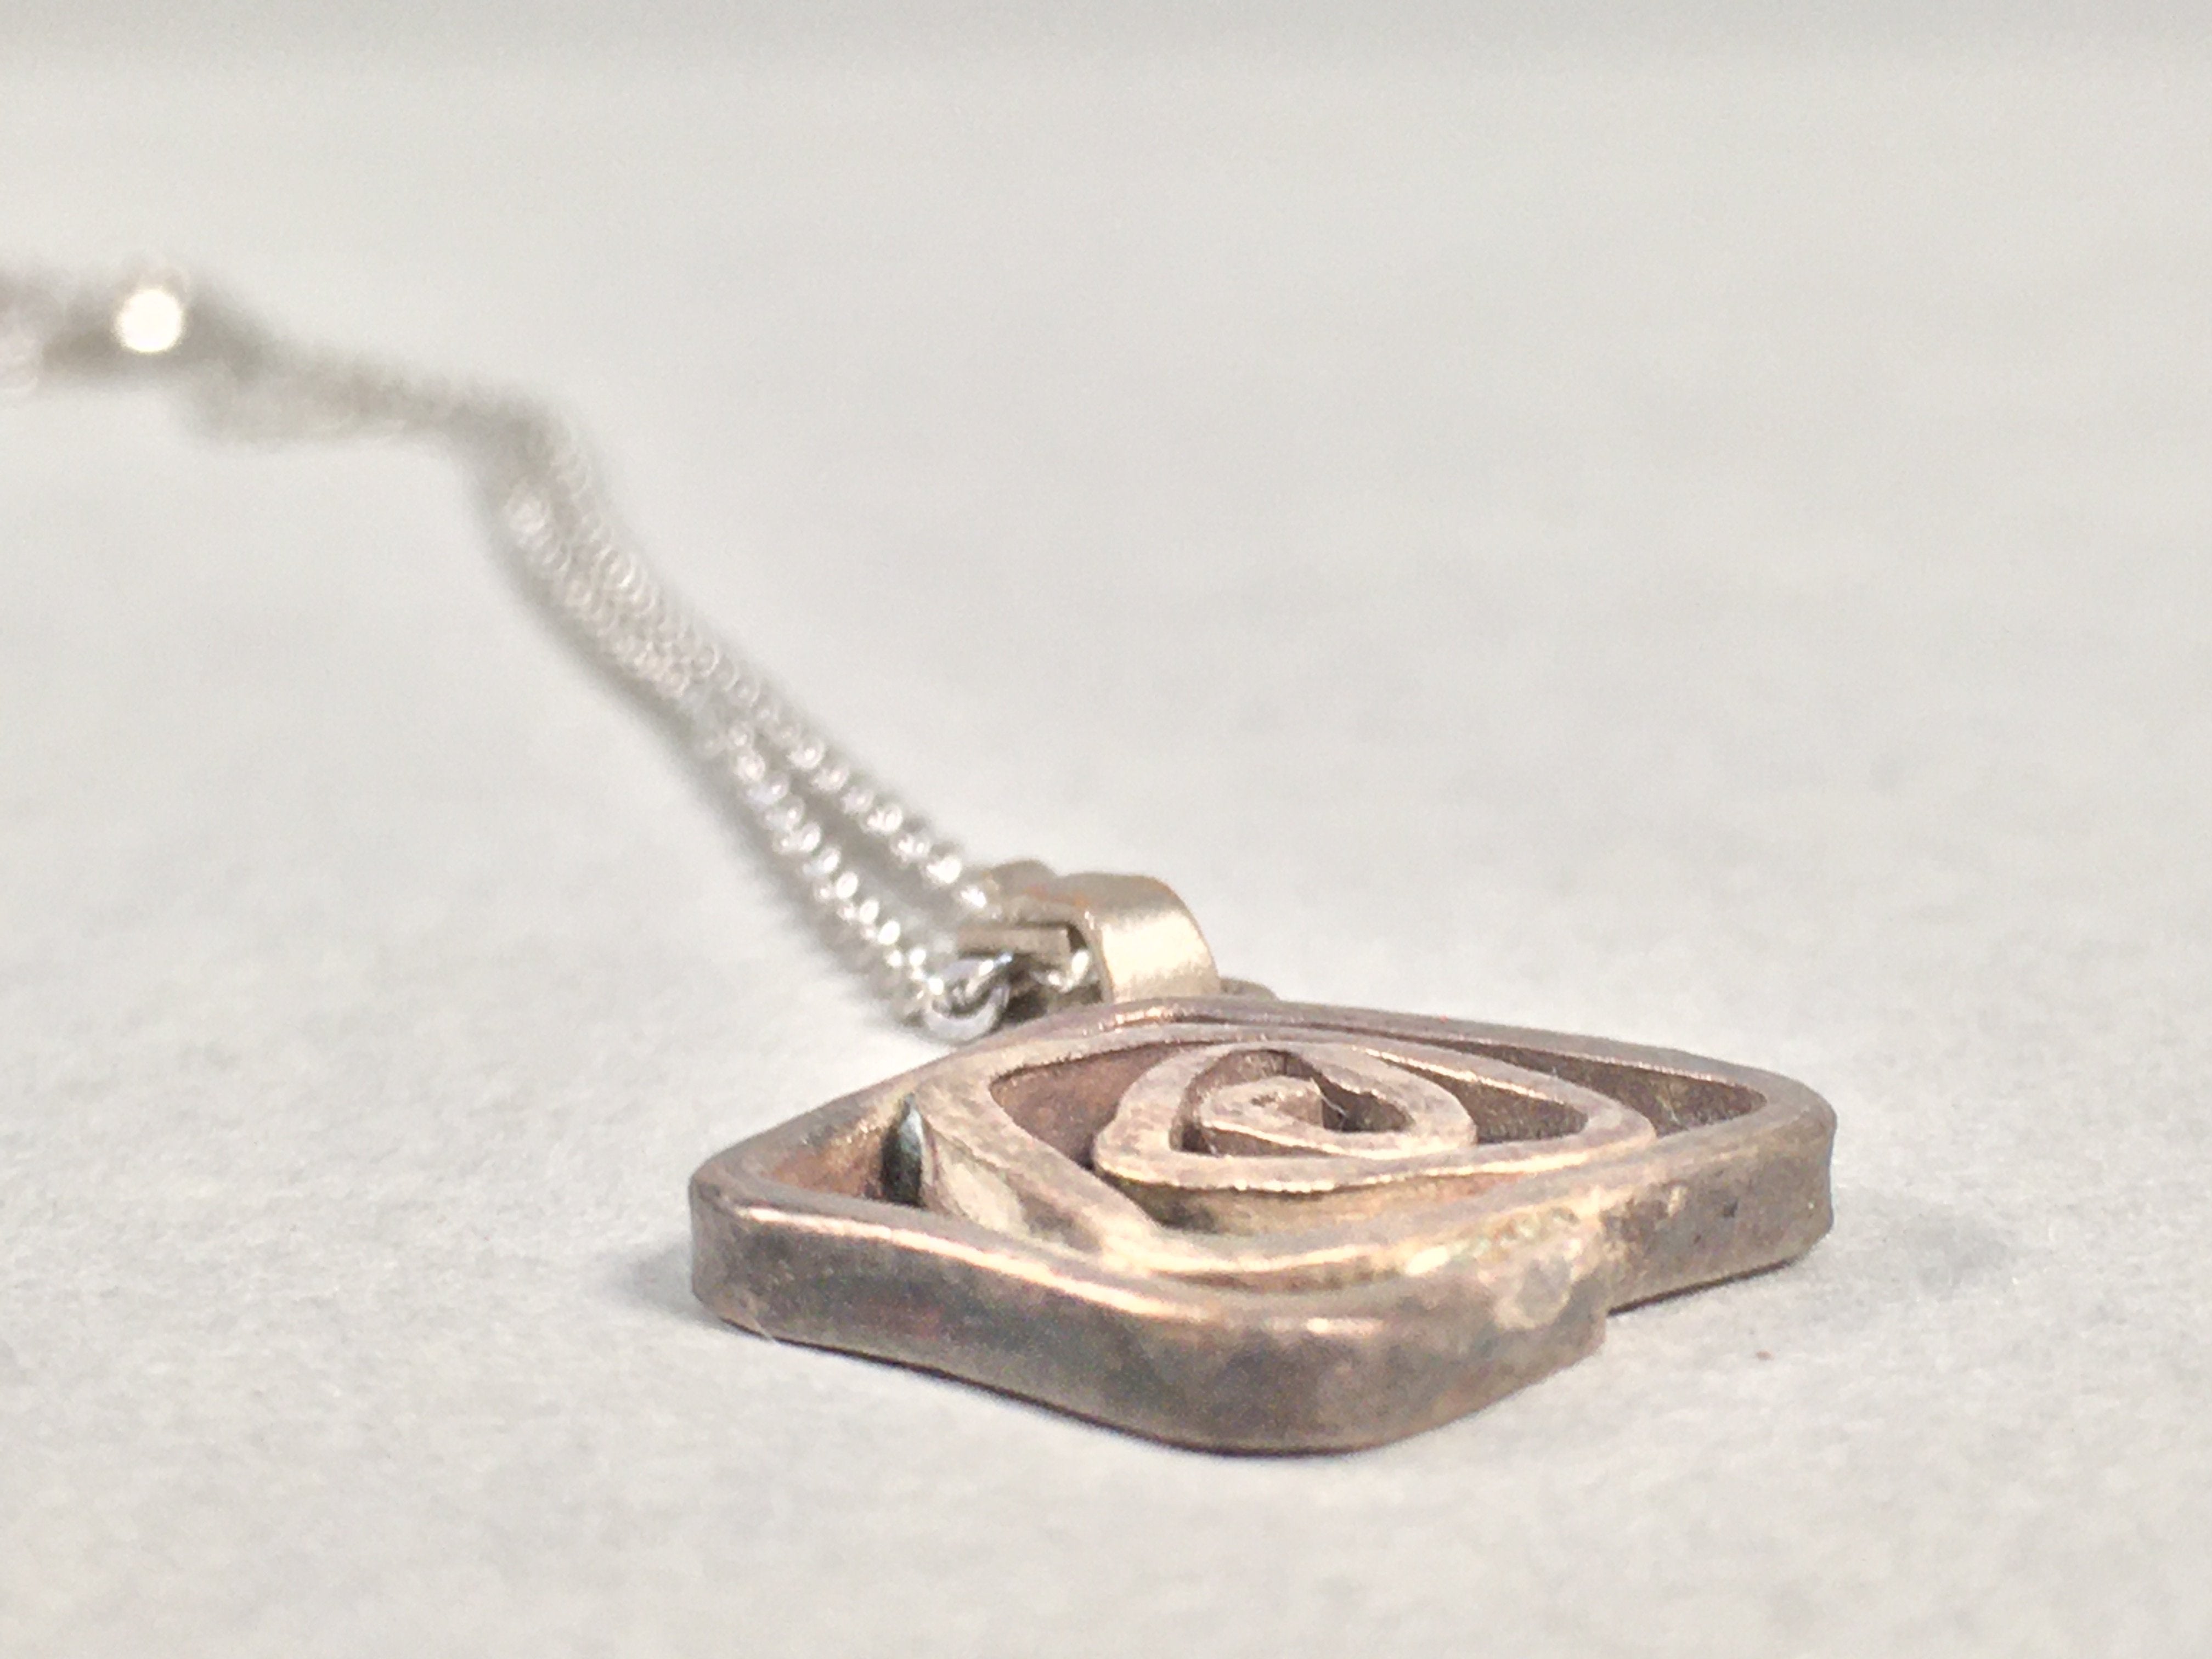 Japanese Necklace Rose Pendant Vtg Metal Silver JK109